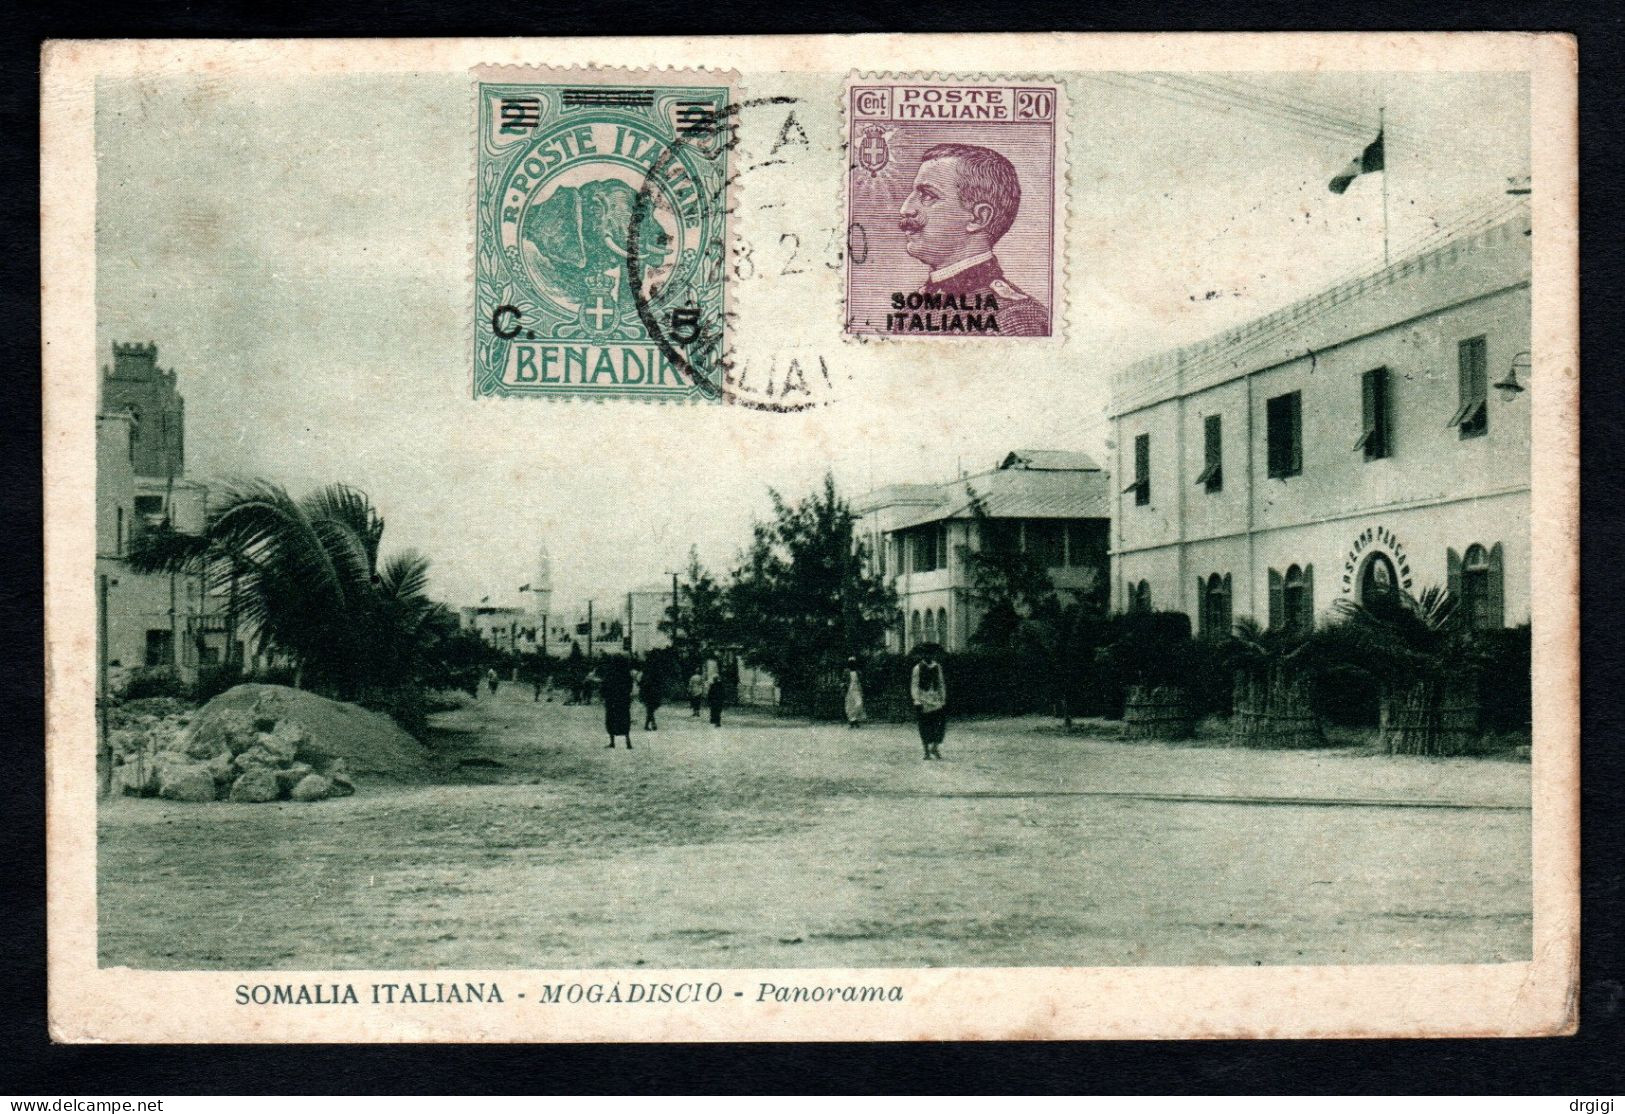 SOMALIA ITALIANA, CARTOLINA 1930, SASS. 74+95, BRAVA X VIENNA  - RARA - Somalie